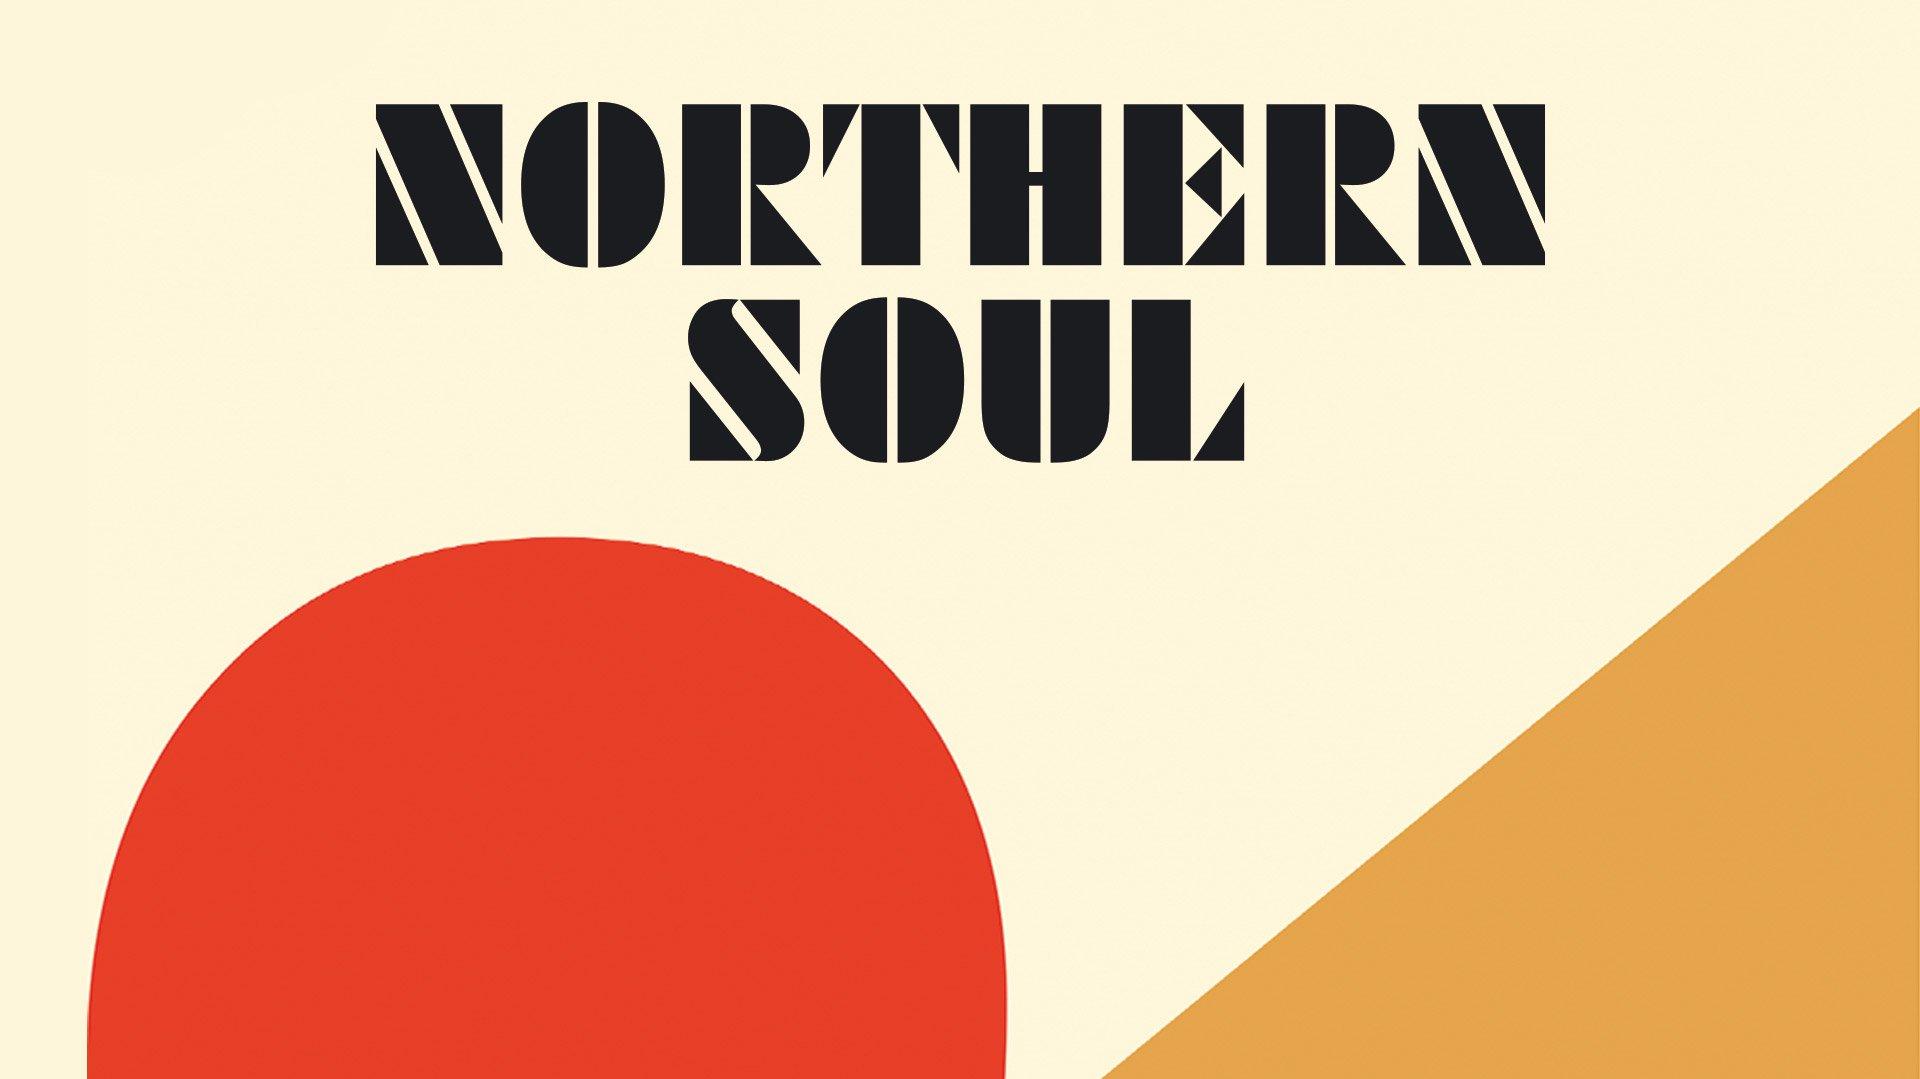 [40+] Northern Soul Wallpapers | WallpaperSafari